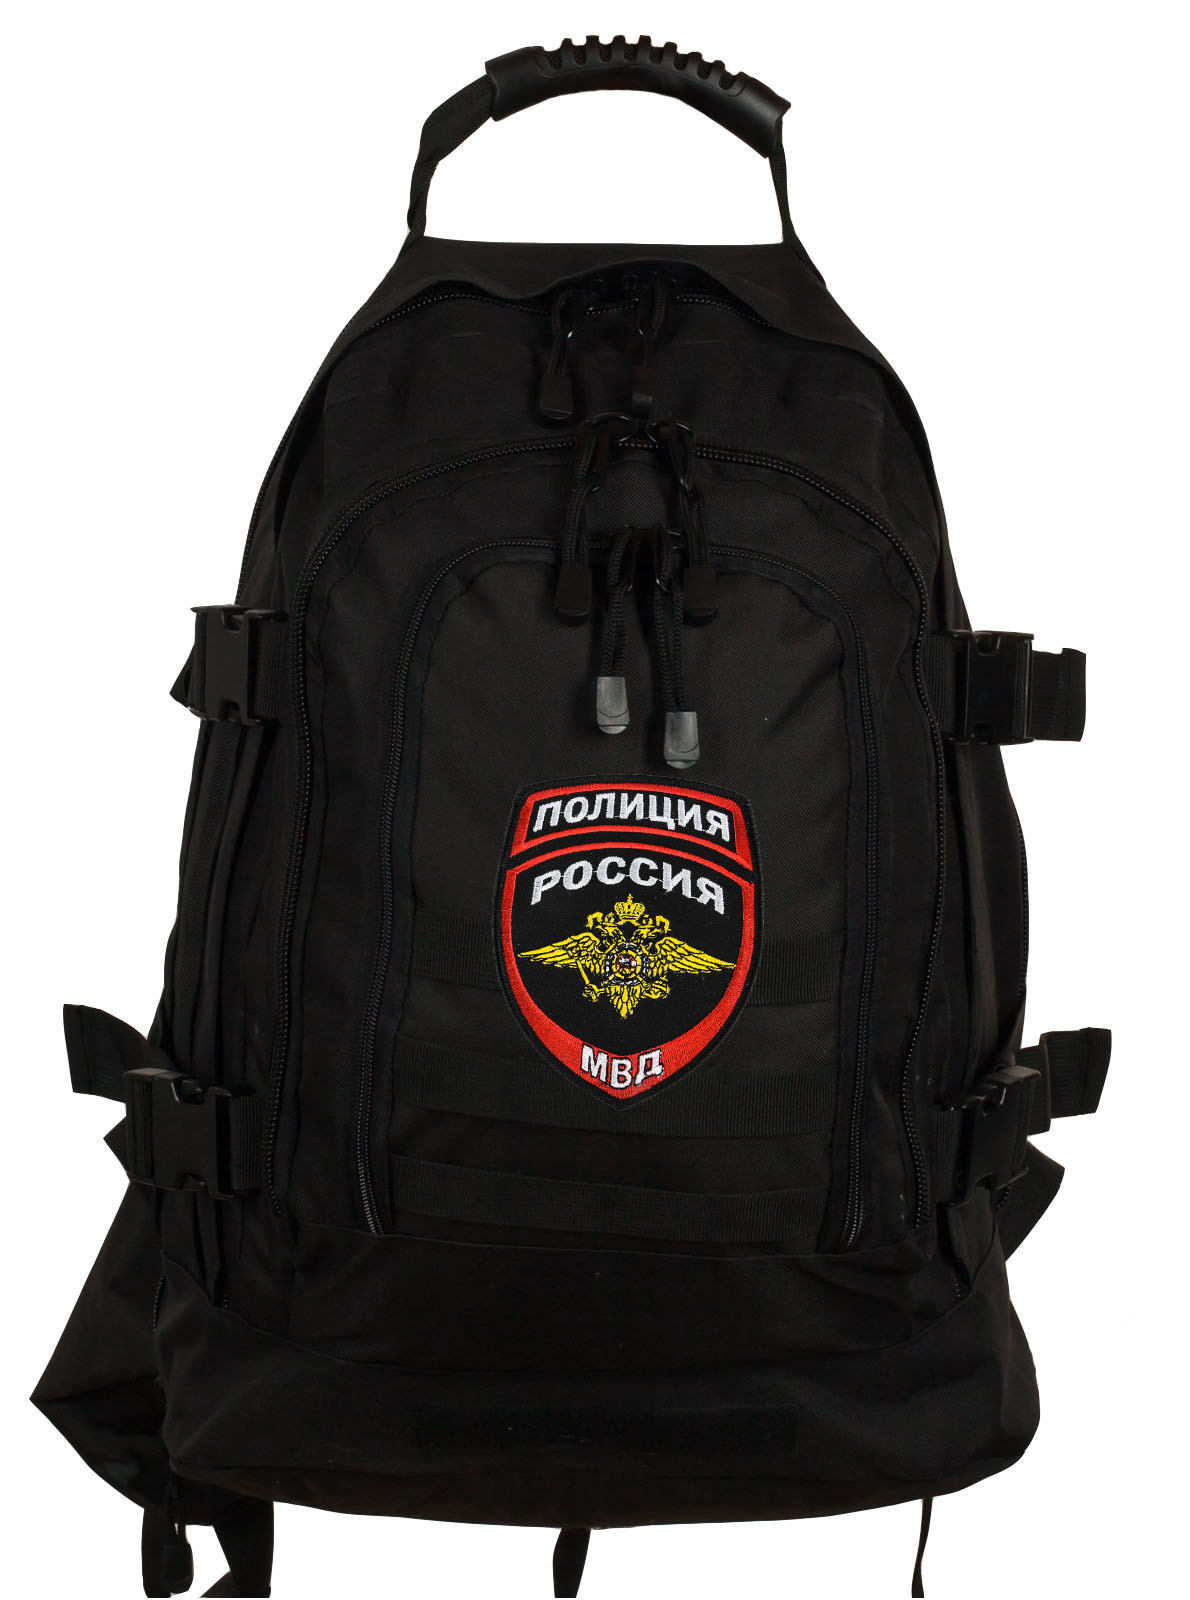 Купить тактический удобный рюкзак с нашивкой Полиция России с доставкой или самовывозом